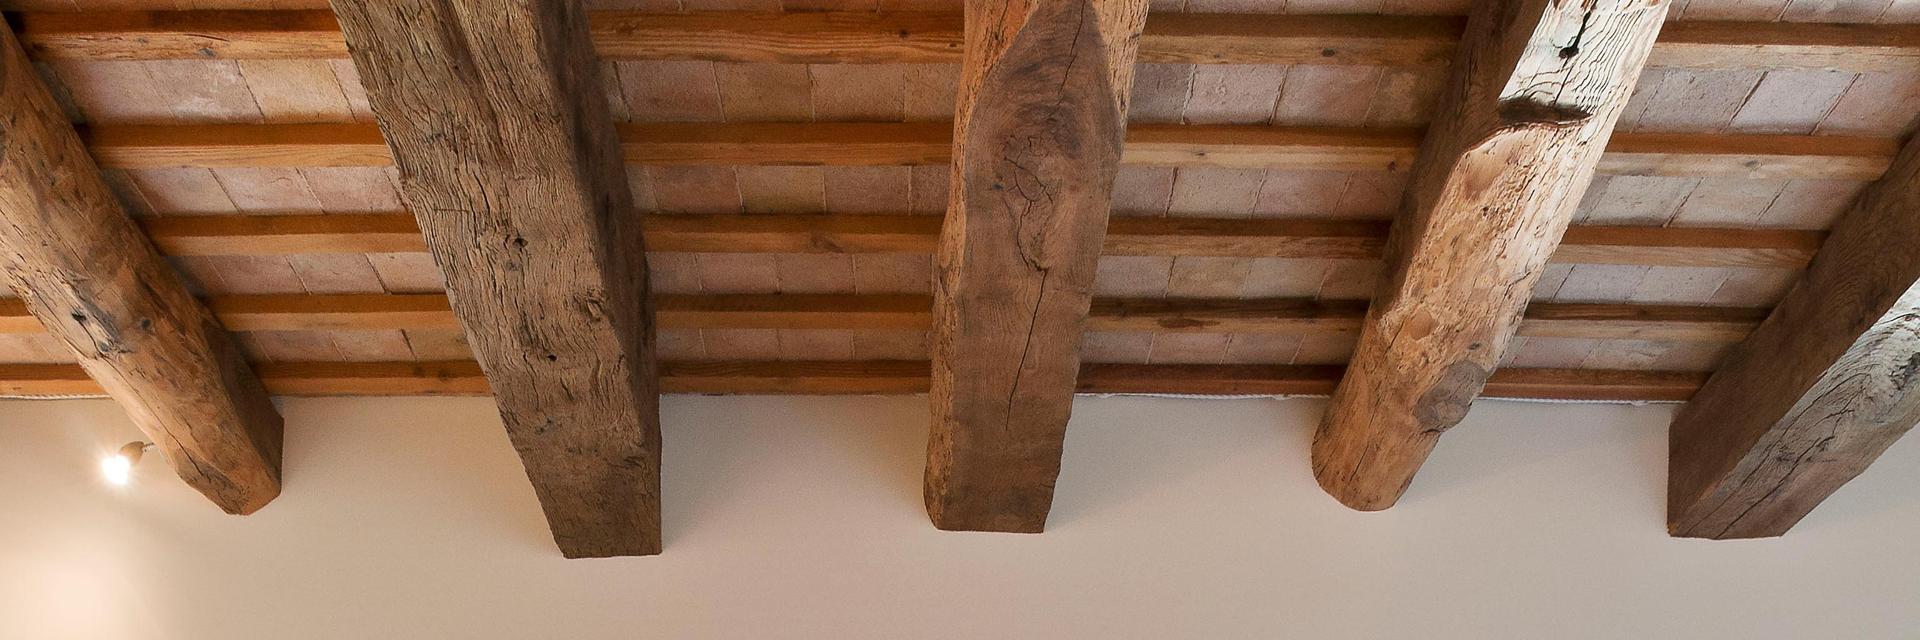 Tetti in legno antico